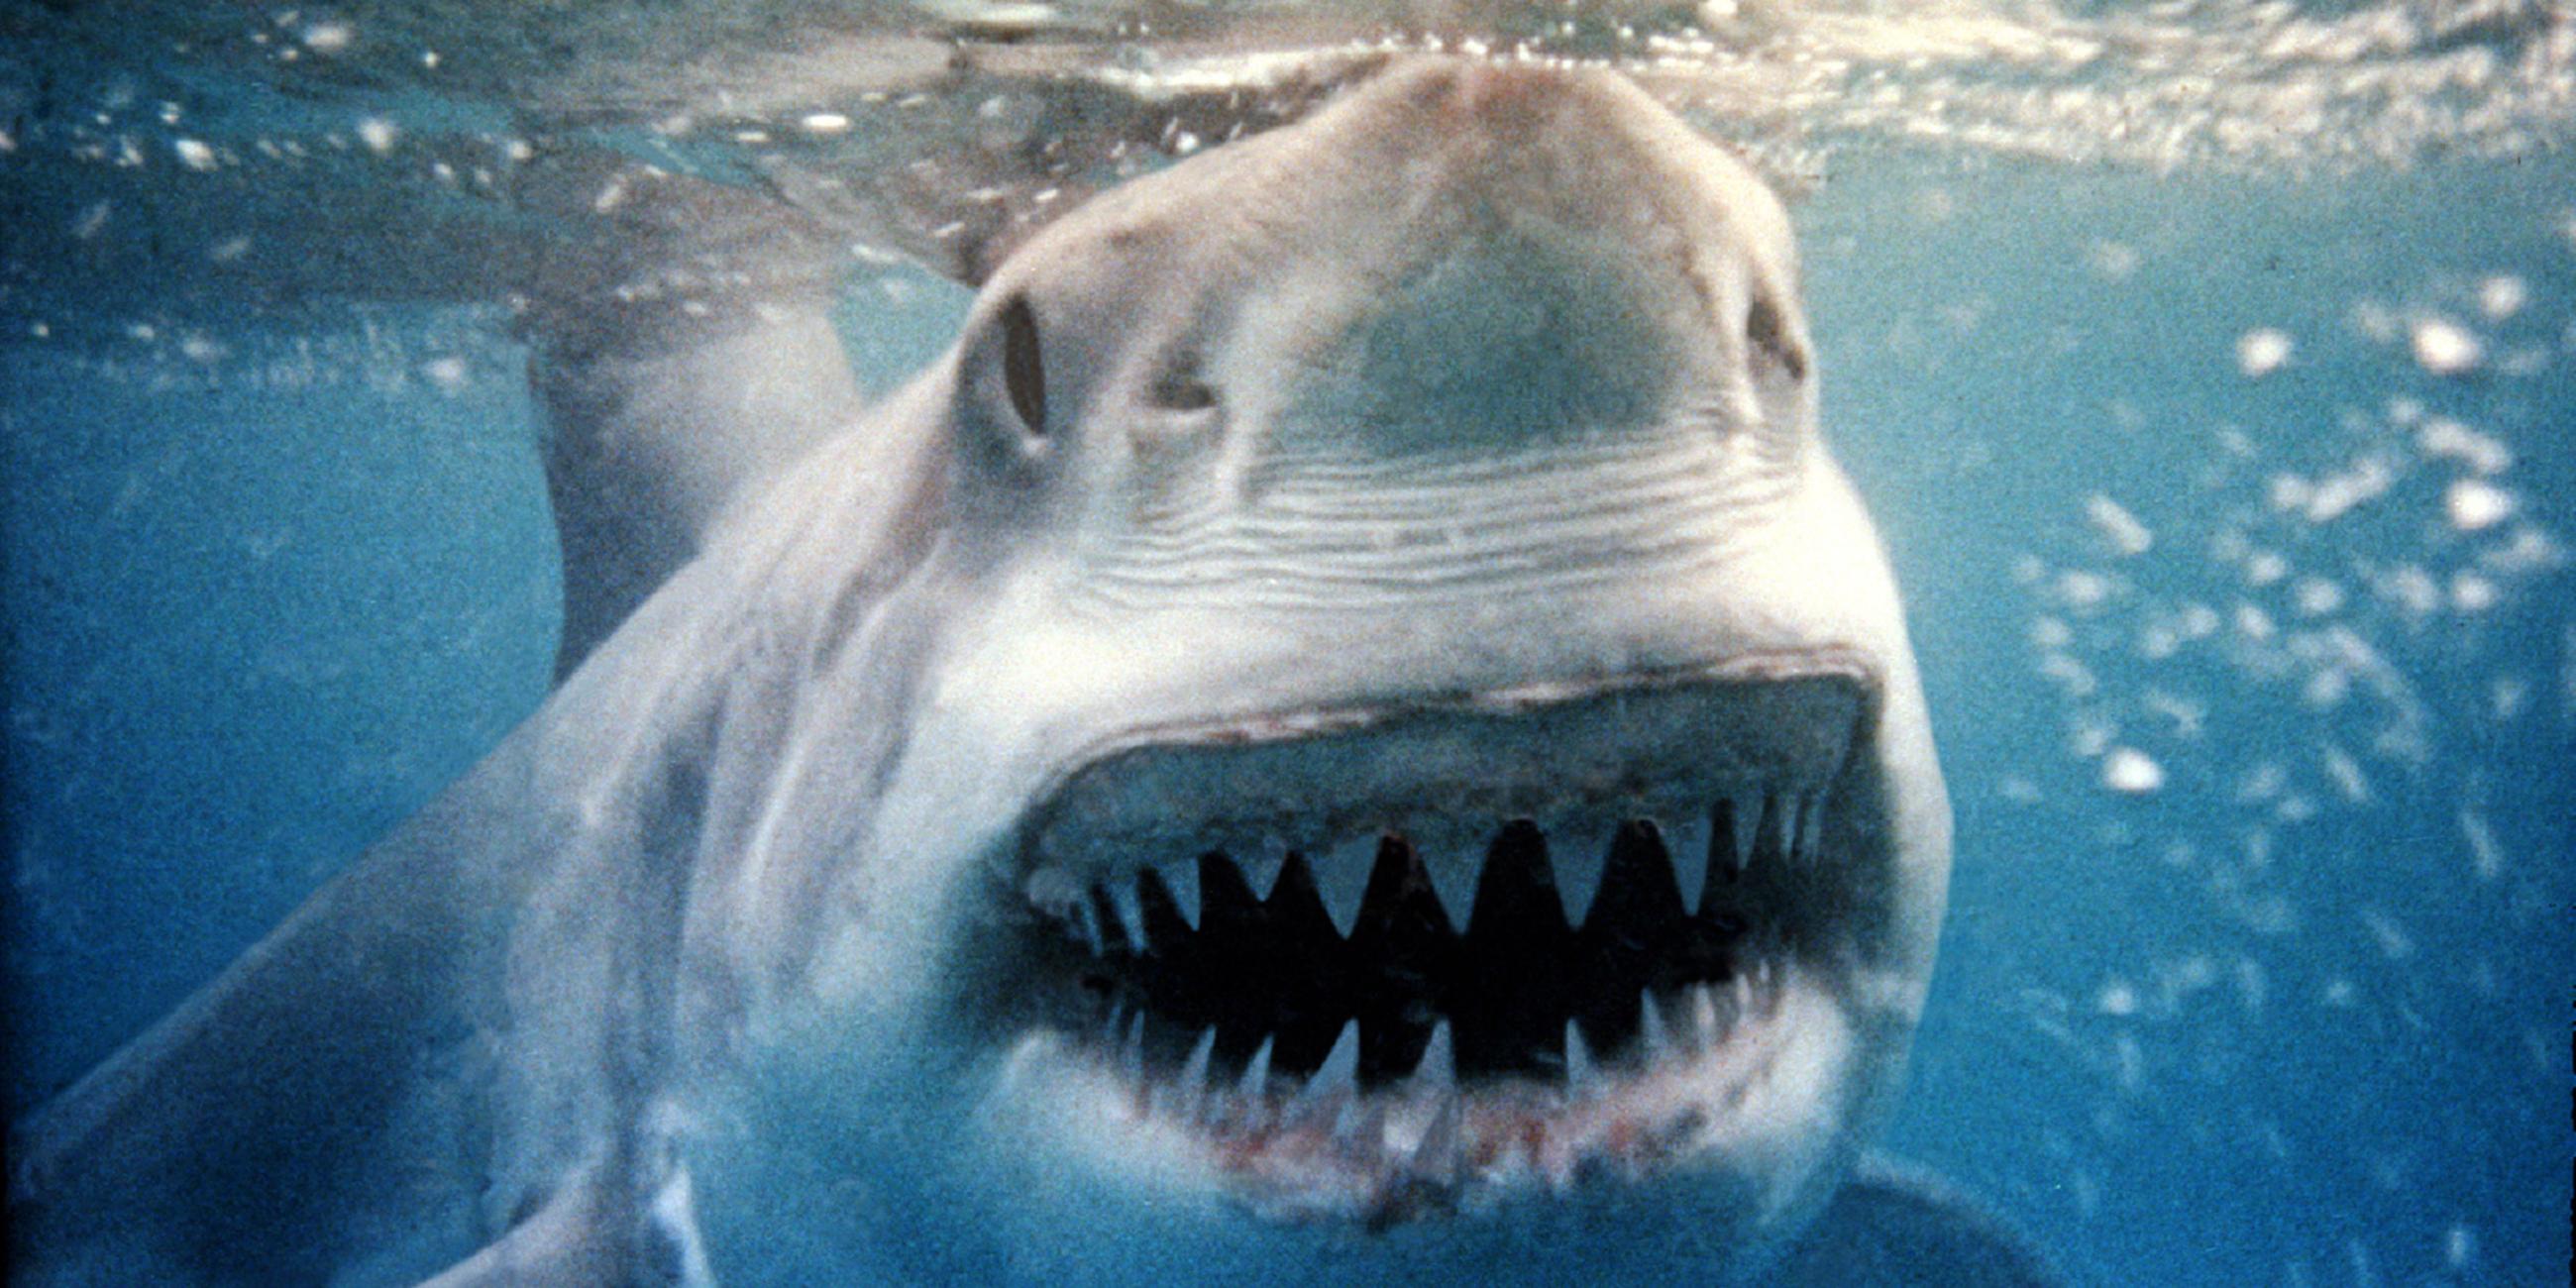 Es ist groß ein Hai unter der Wasseroberfläche zu sehen. Er blickt mit offenem Mund direkt in die Kamera.